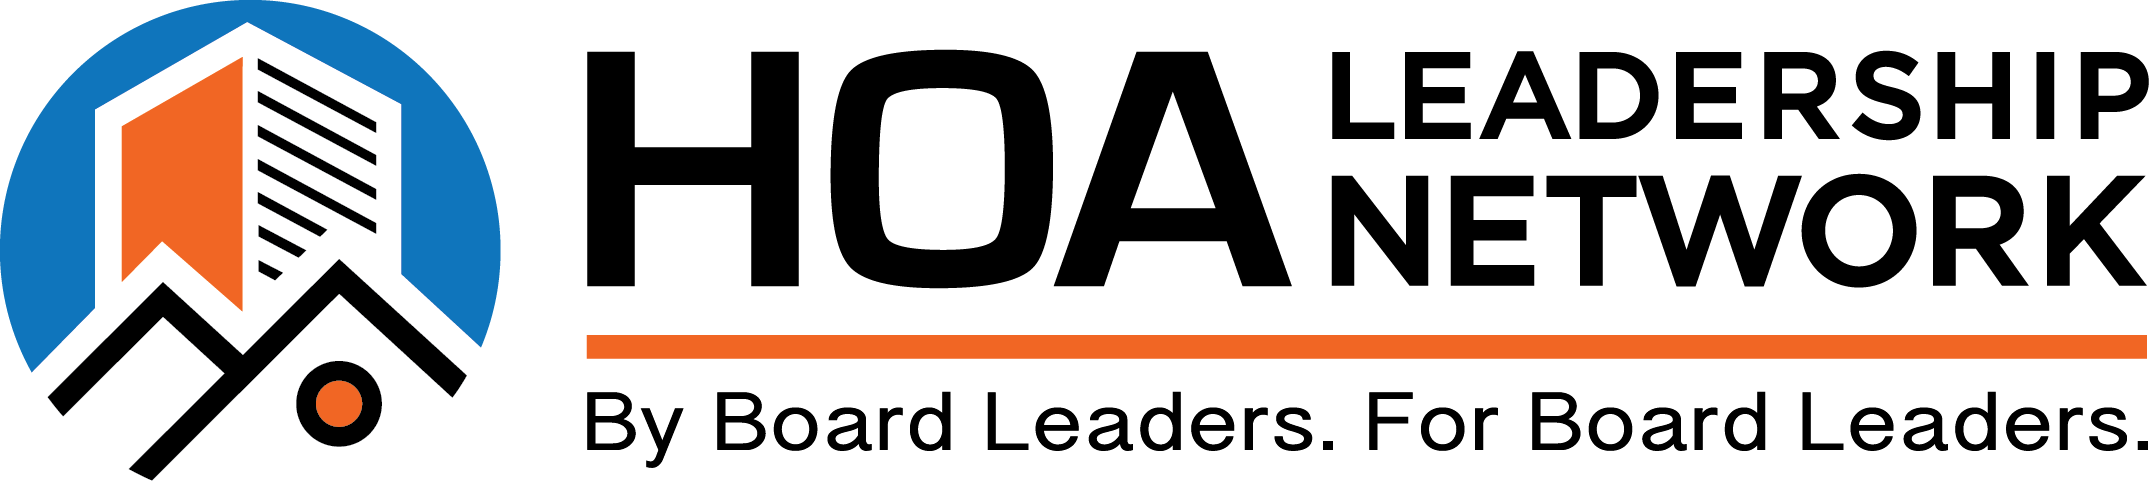 HOA Leadership Network Logo